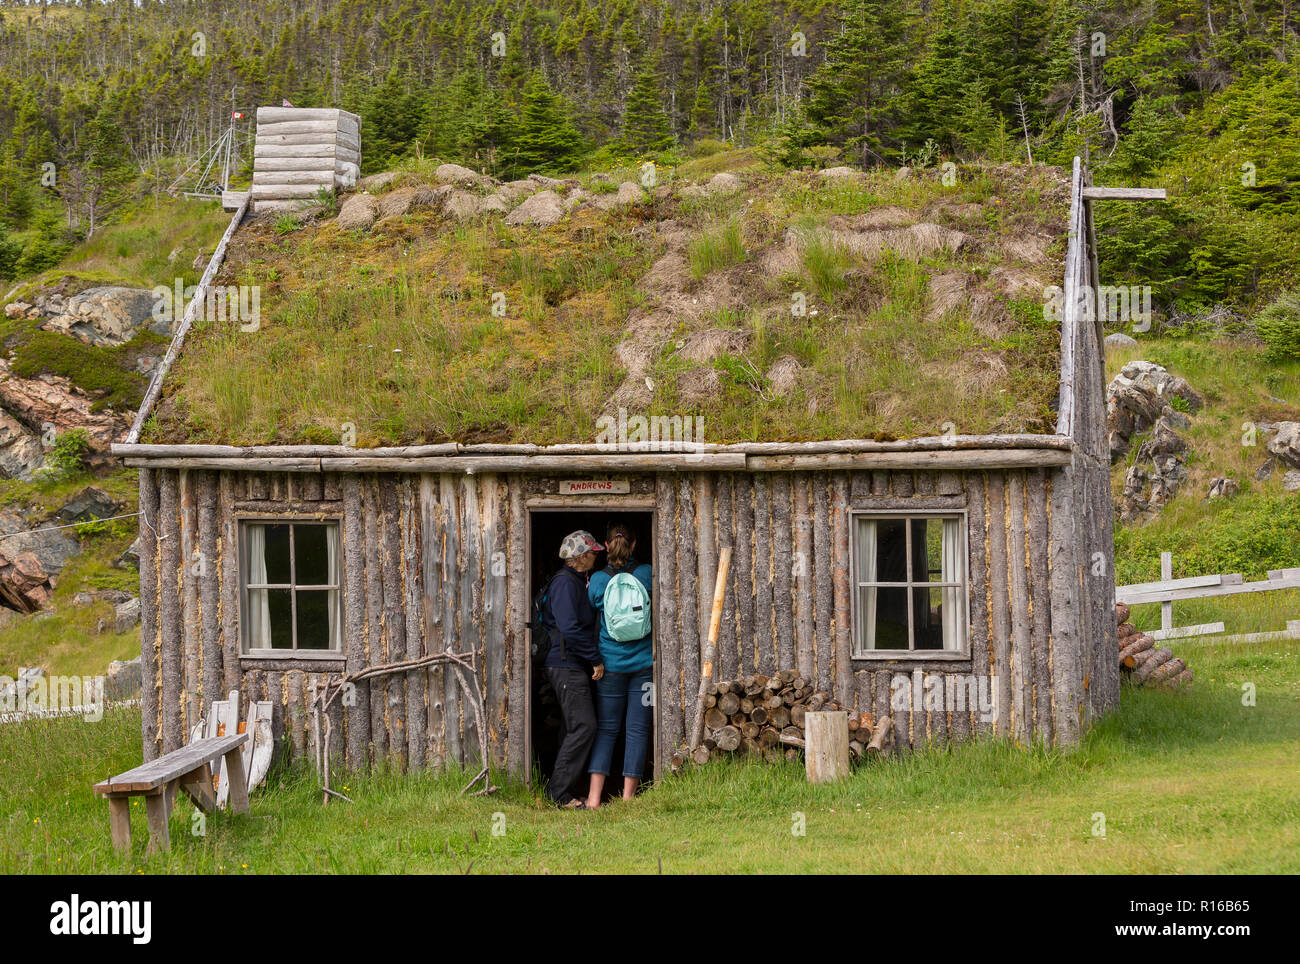 CAPE CASUALE, Terranova, CANADA - turisti entrare in cabina in corrispondenza di passaggio casuale set cinematografico, replica del villaggio di pescatori. Foto Stock